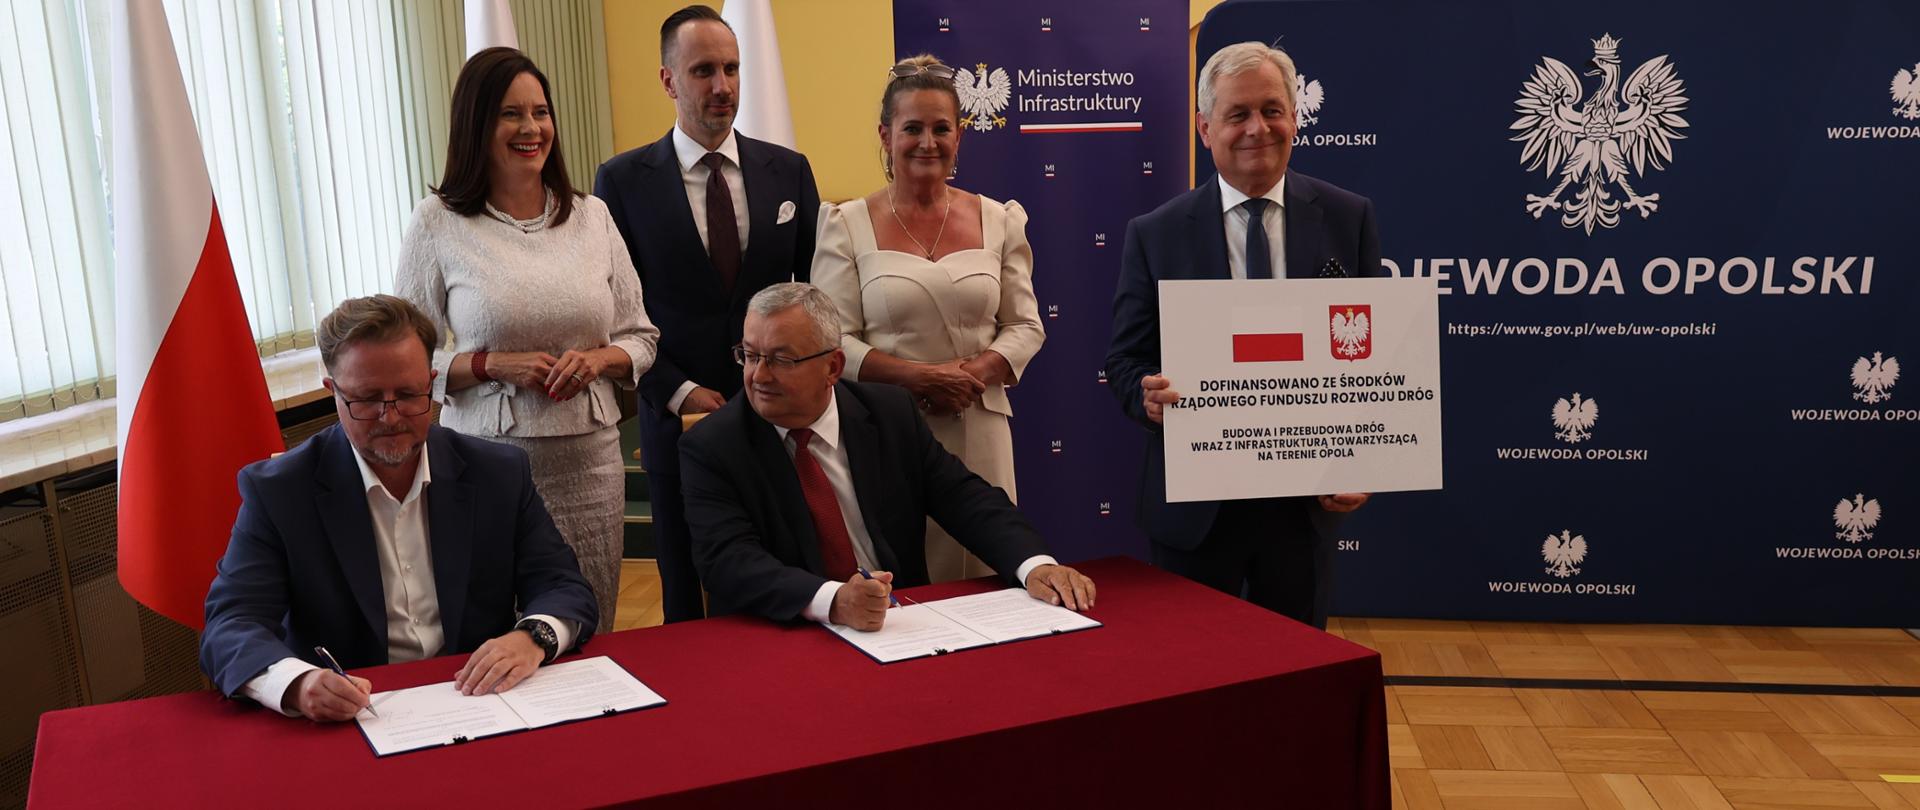 Minister A.Adamczyk i wiceprezydent Opola podpisują umowę. W drugim planie opolscy parlamentarzyści i wojewoda opolski.